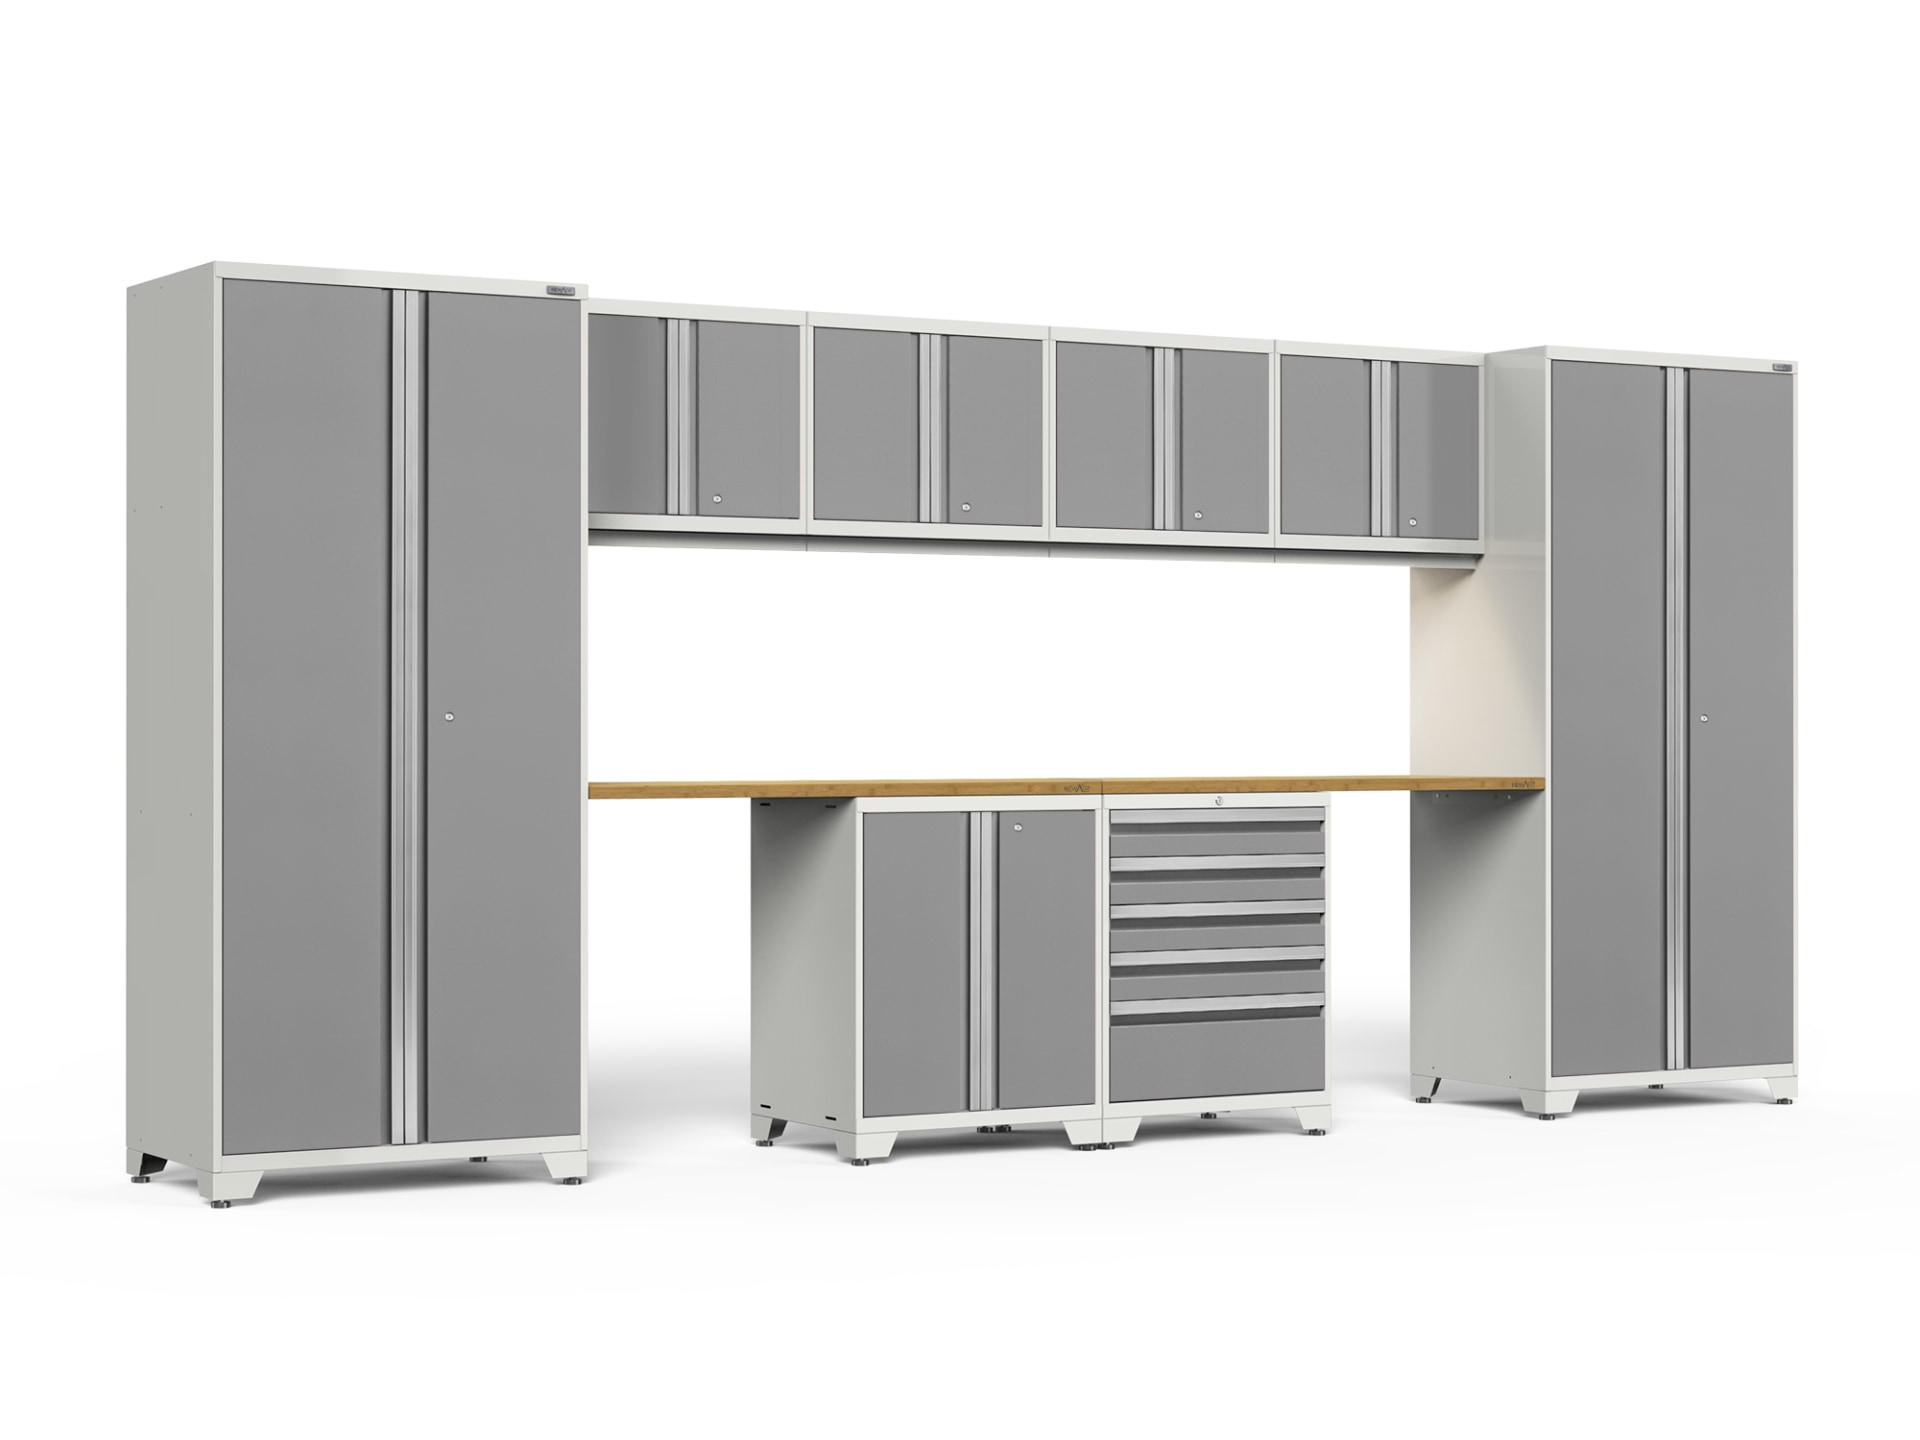 Costco Newage Cabinets, Costco Newage Pro Cabinets